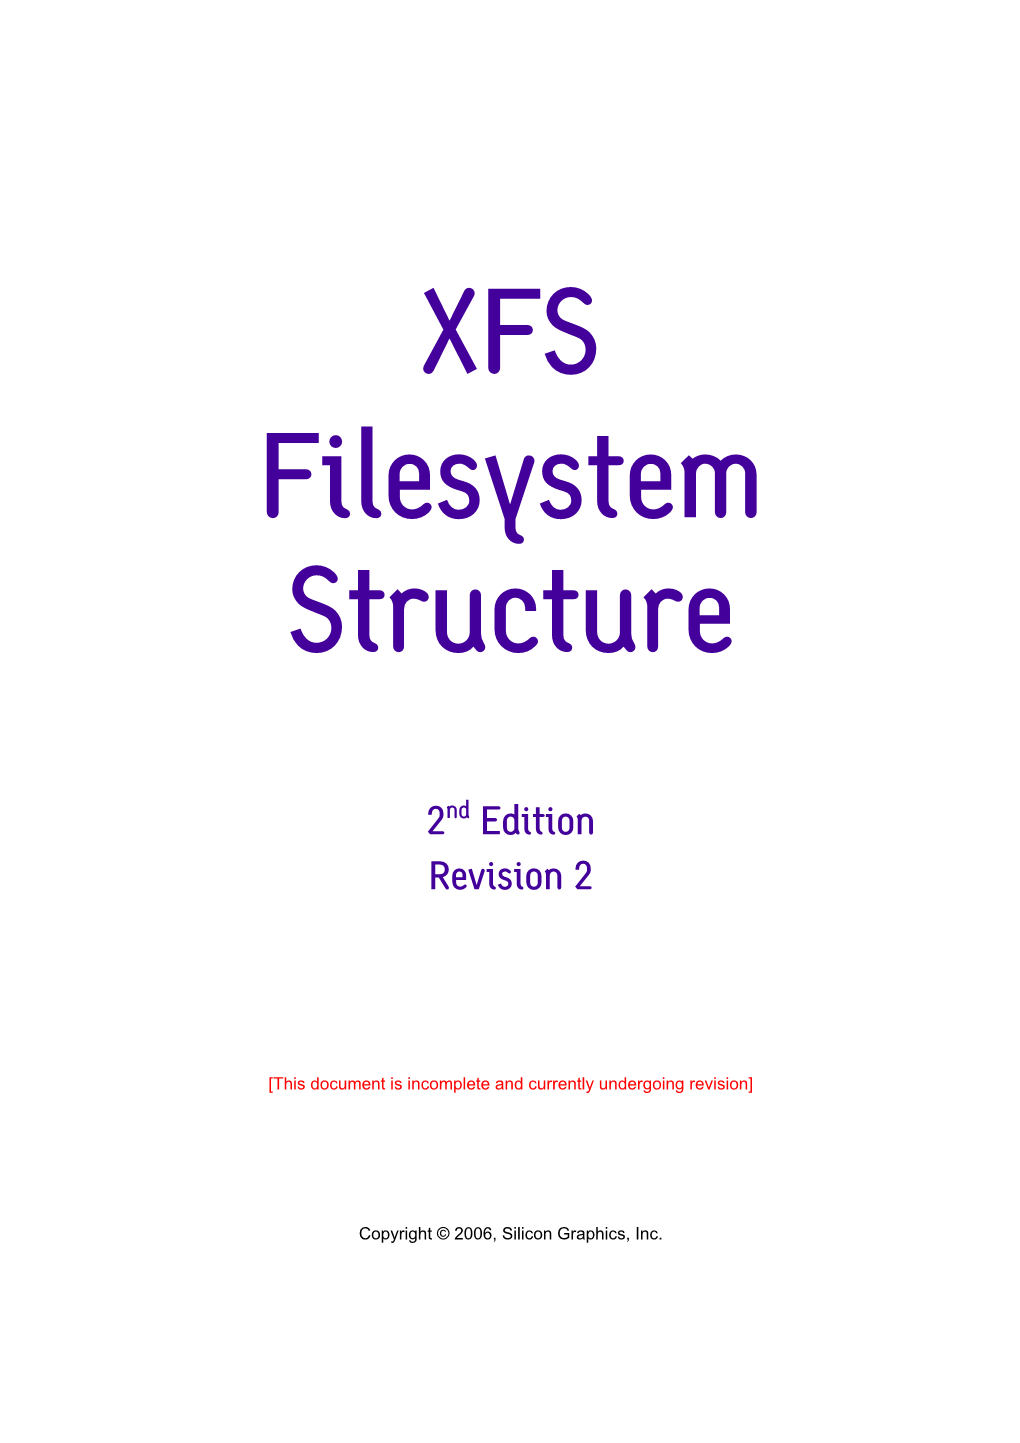 XFS Filesystem Structure (Rev 2)